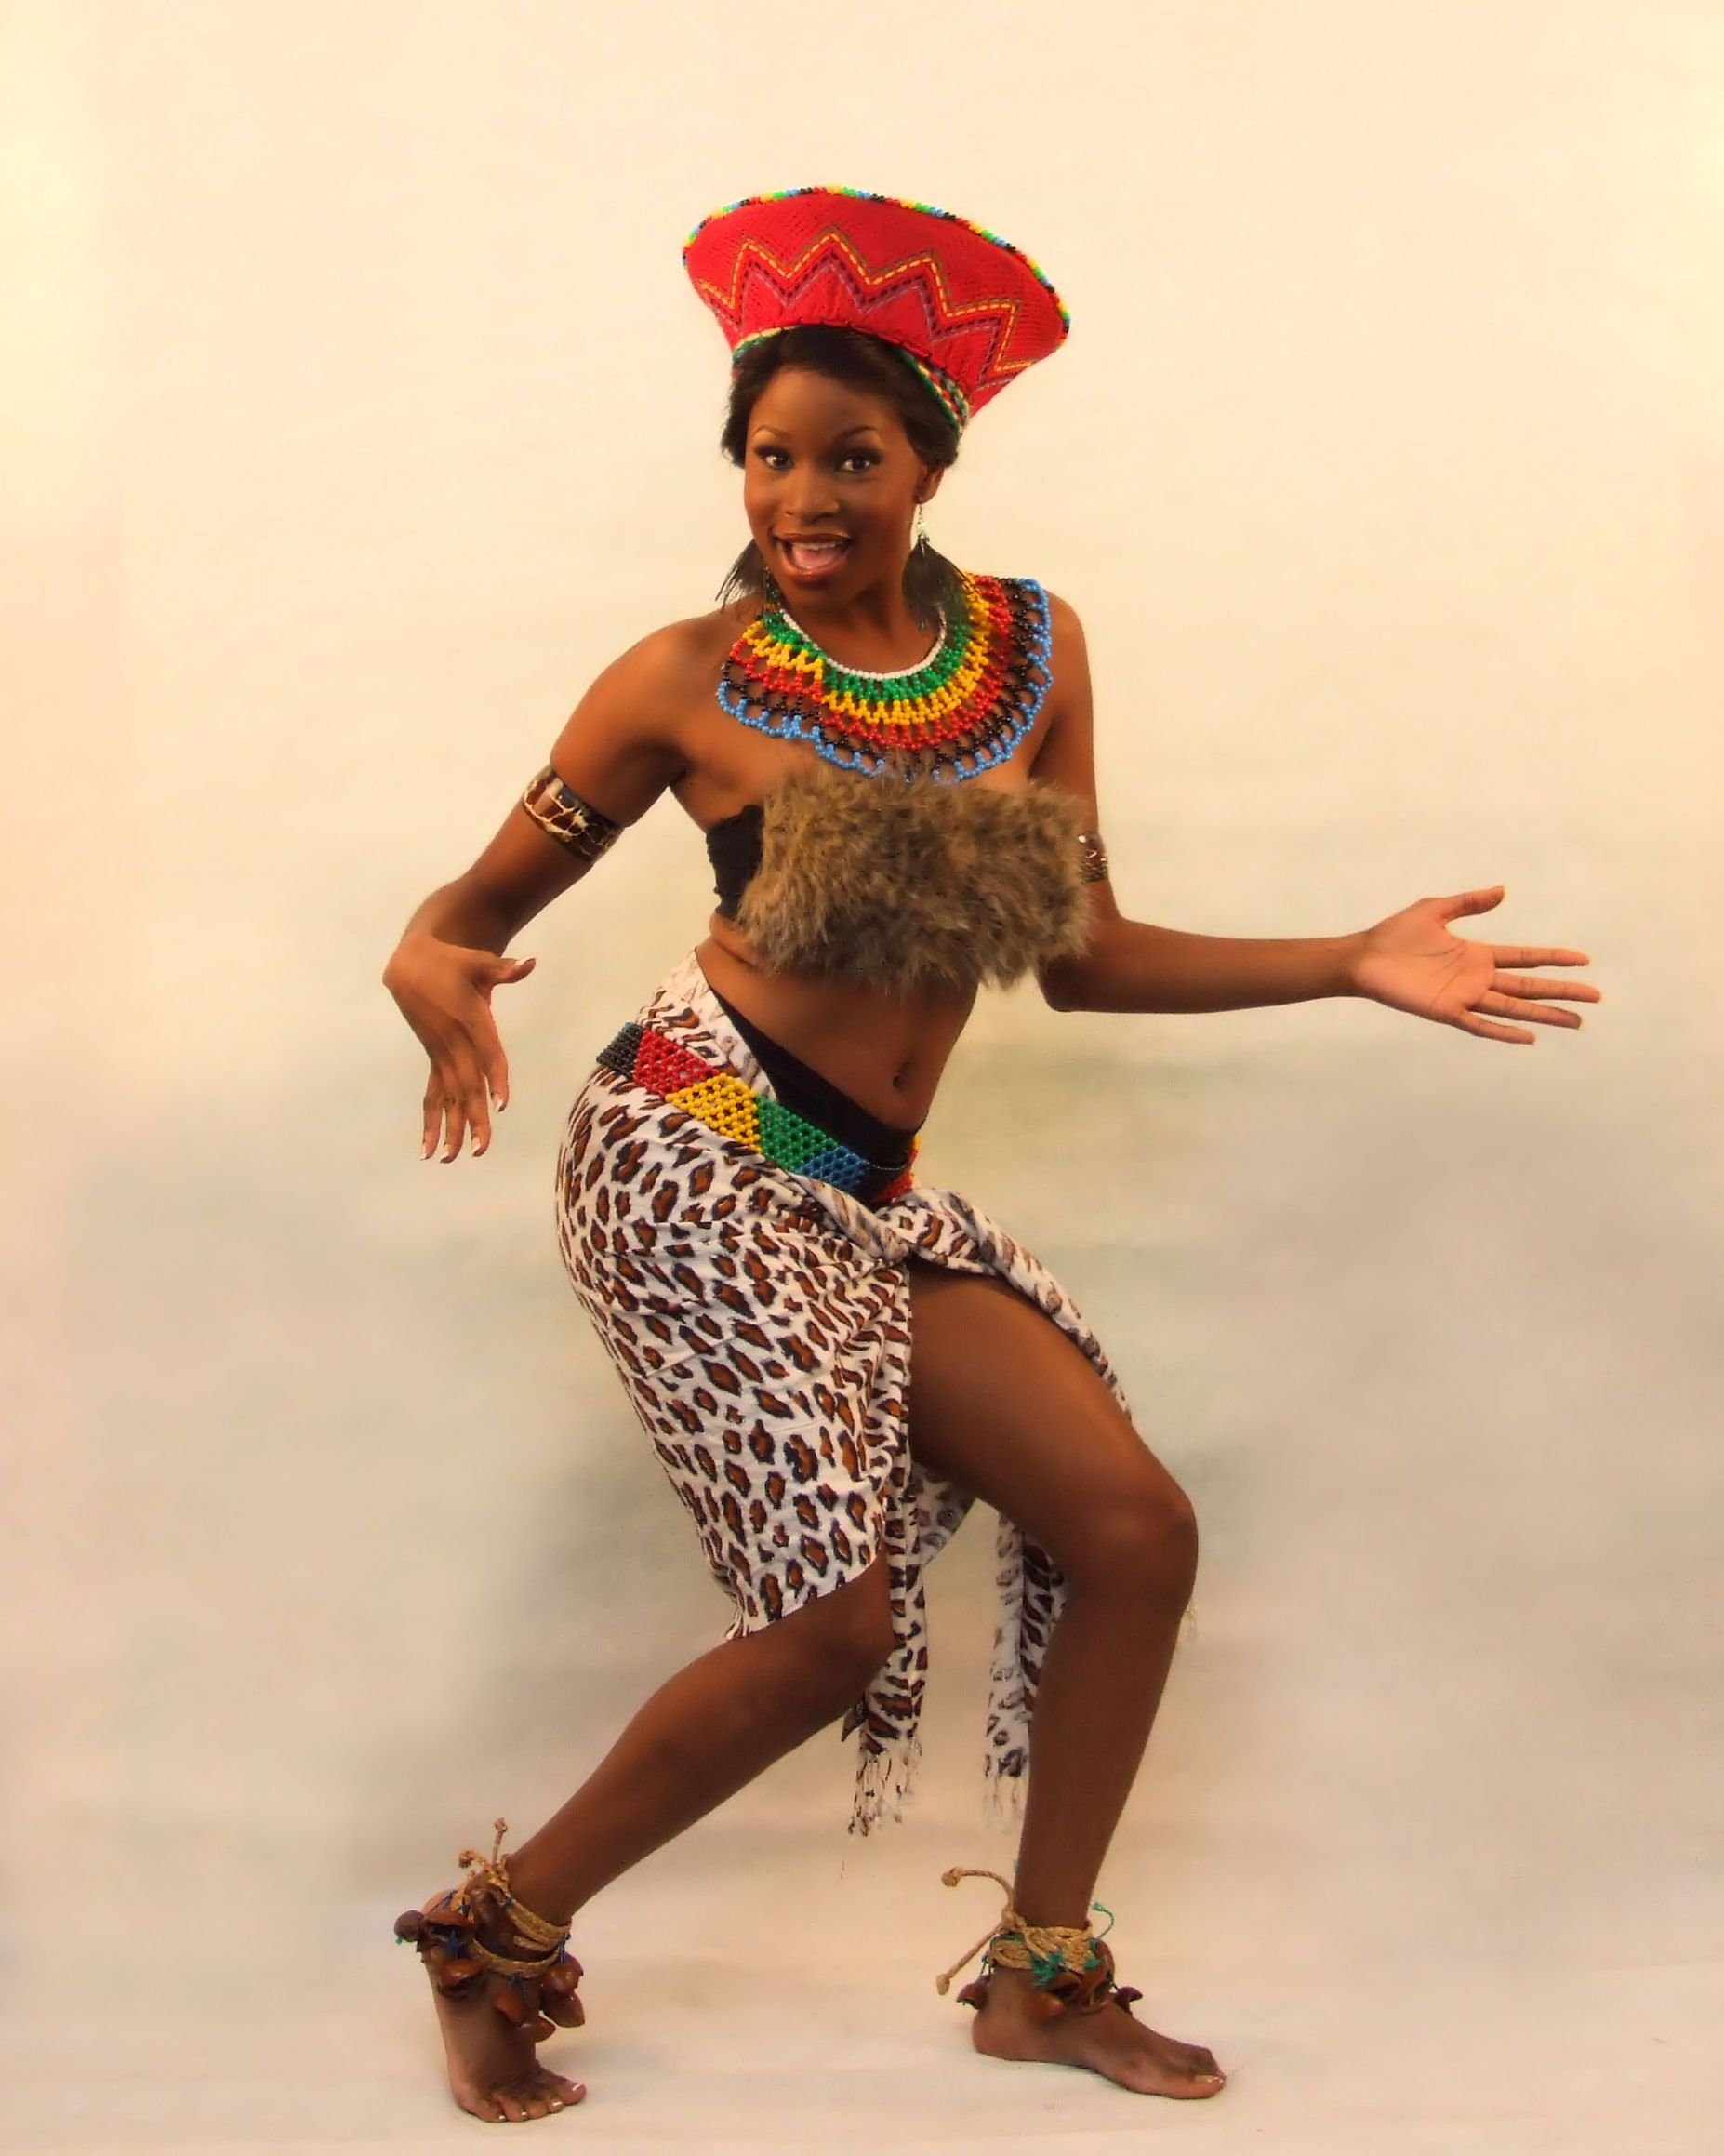 Современные африканки в нарядах предков (16 фото)